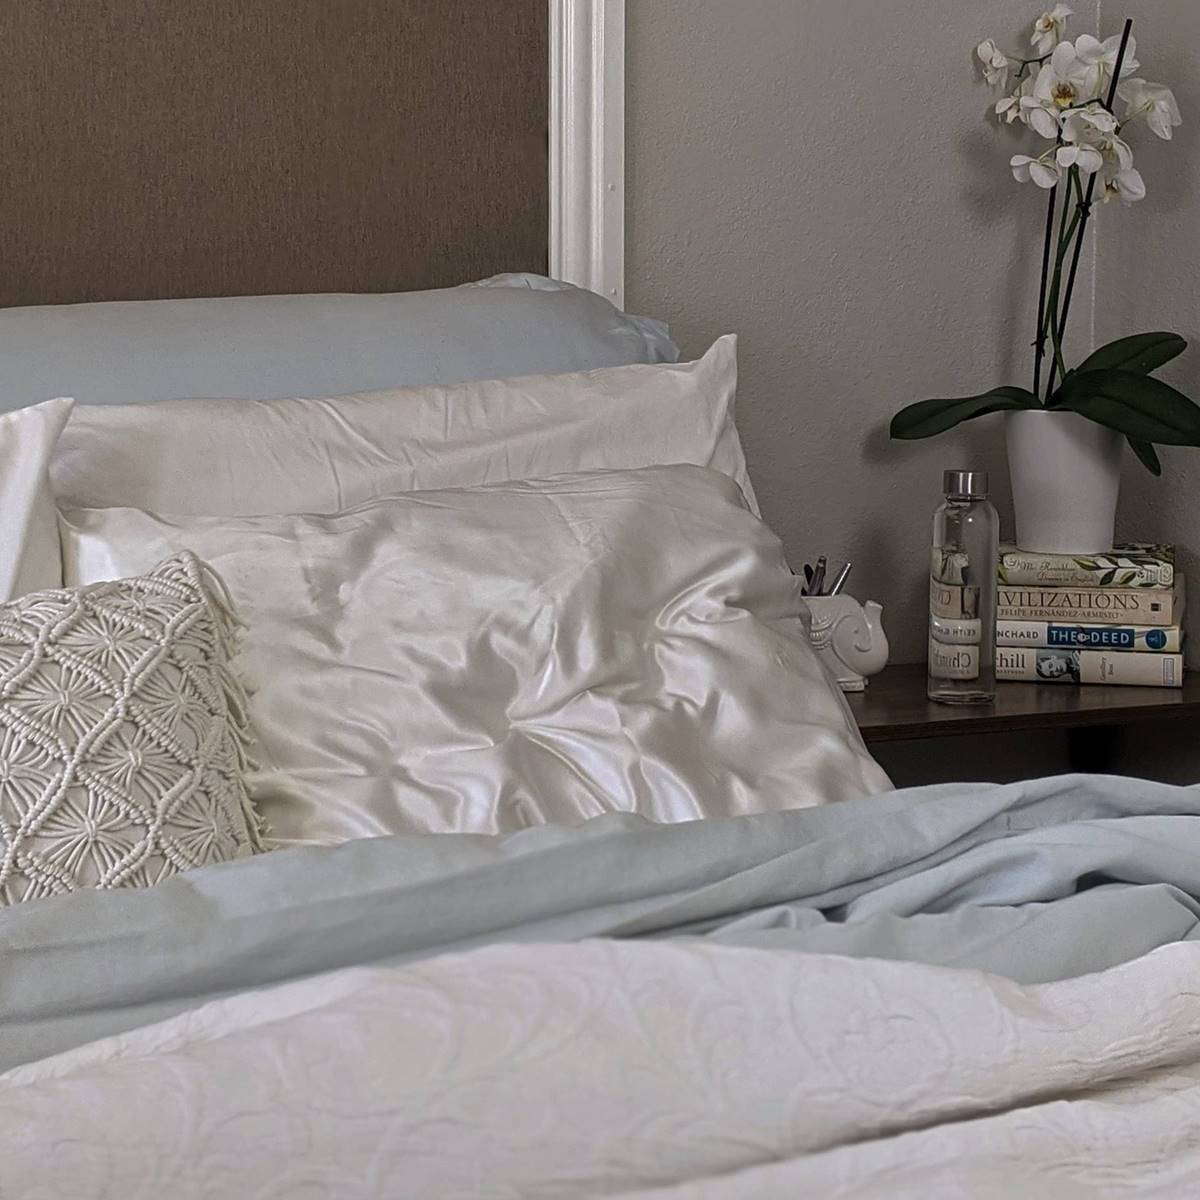 Por qué son recomendables las almohadas de seda?